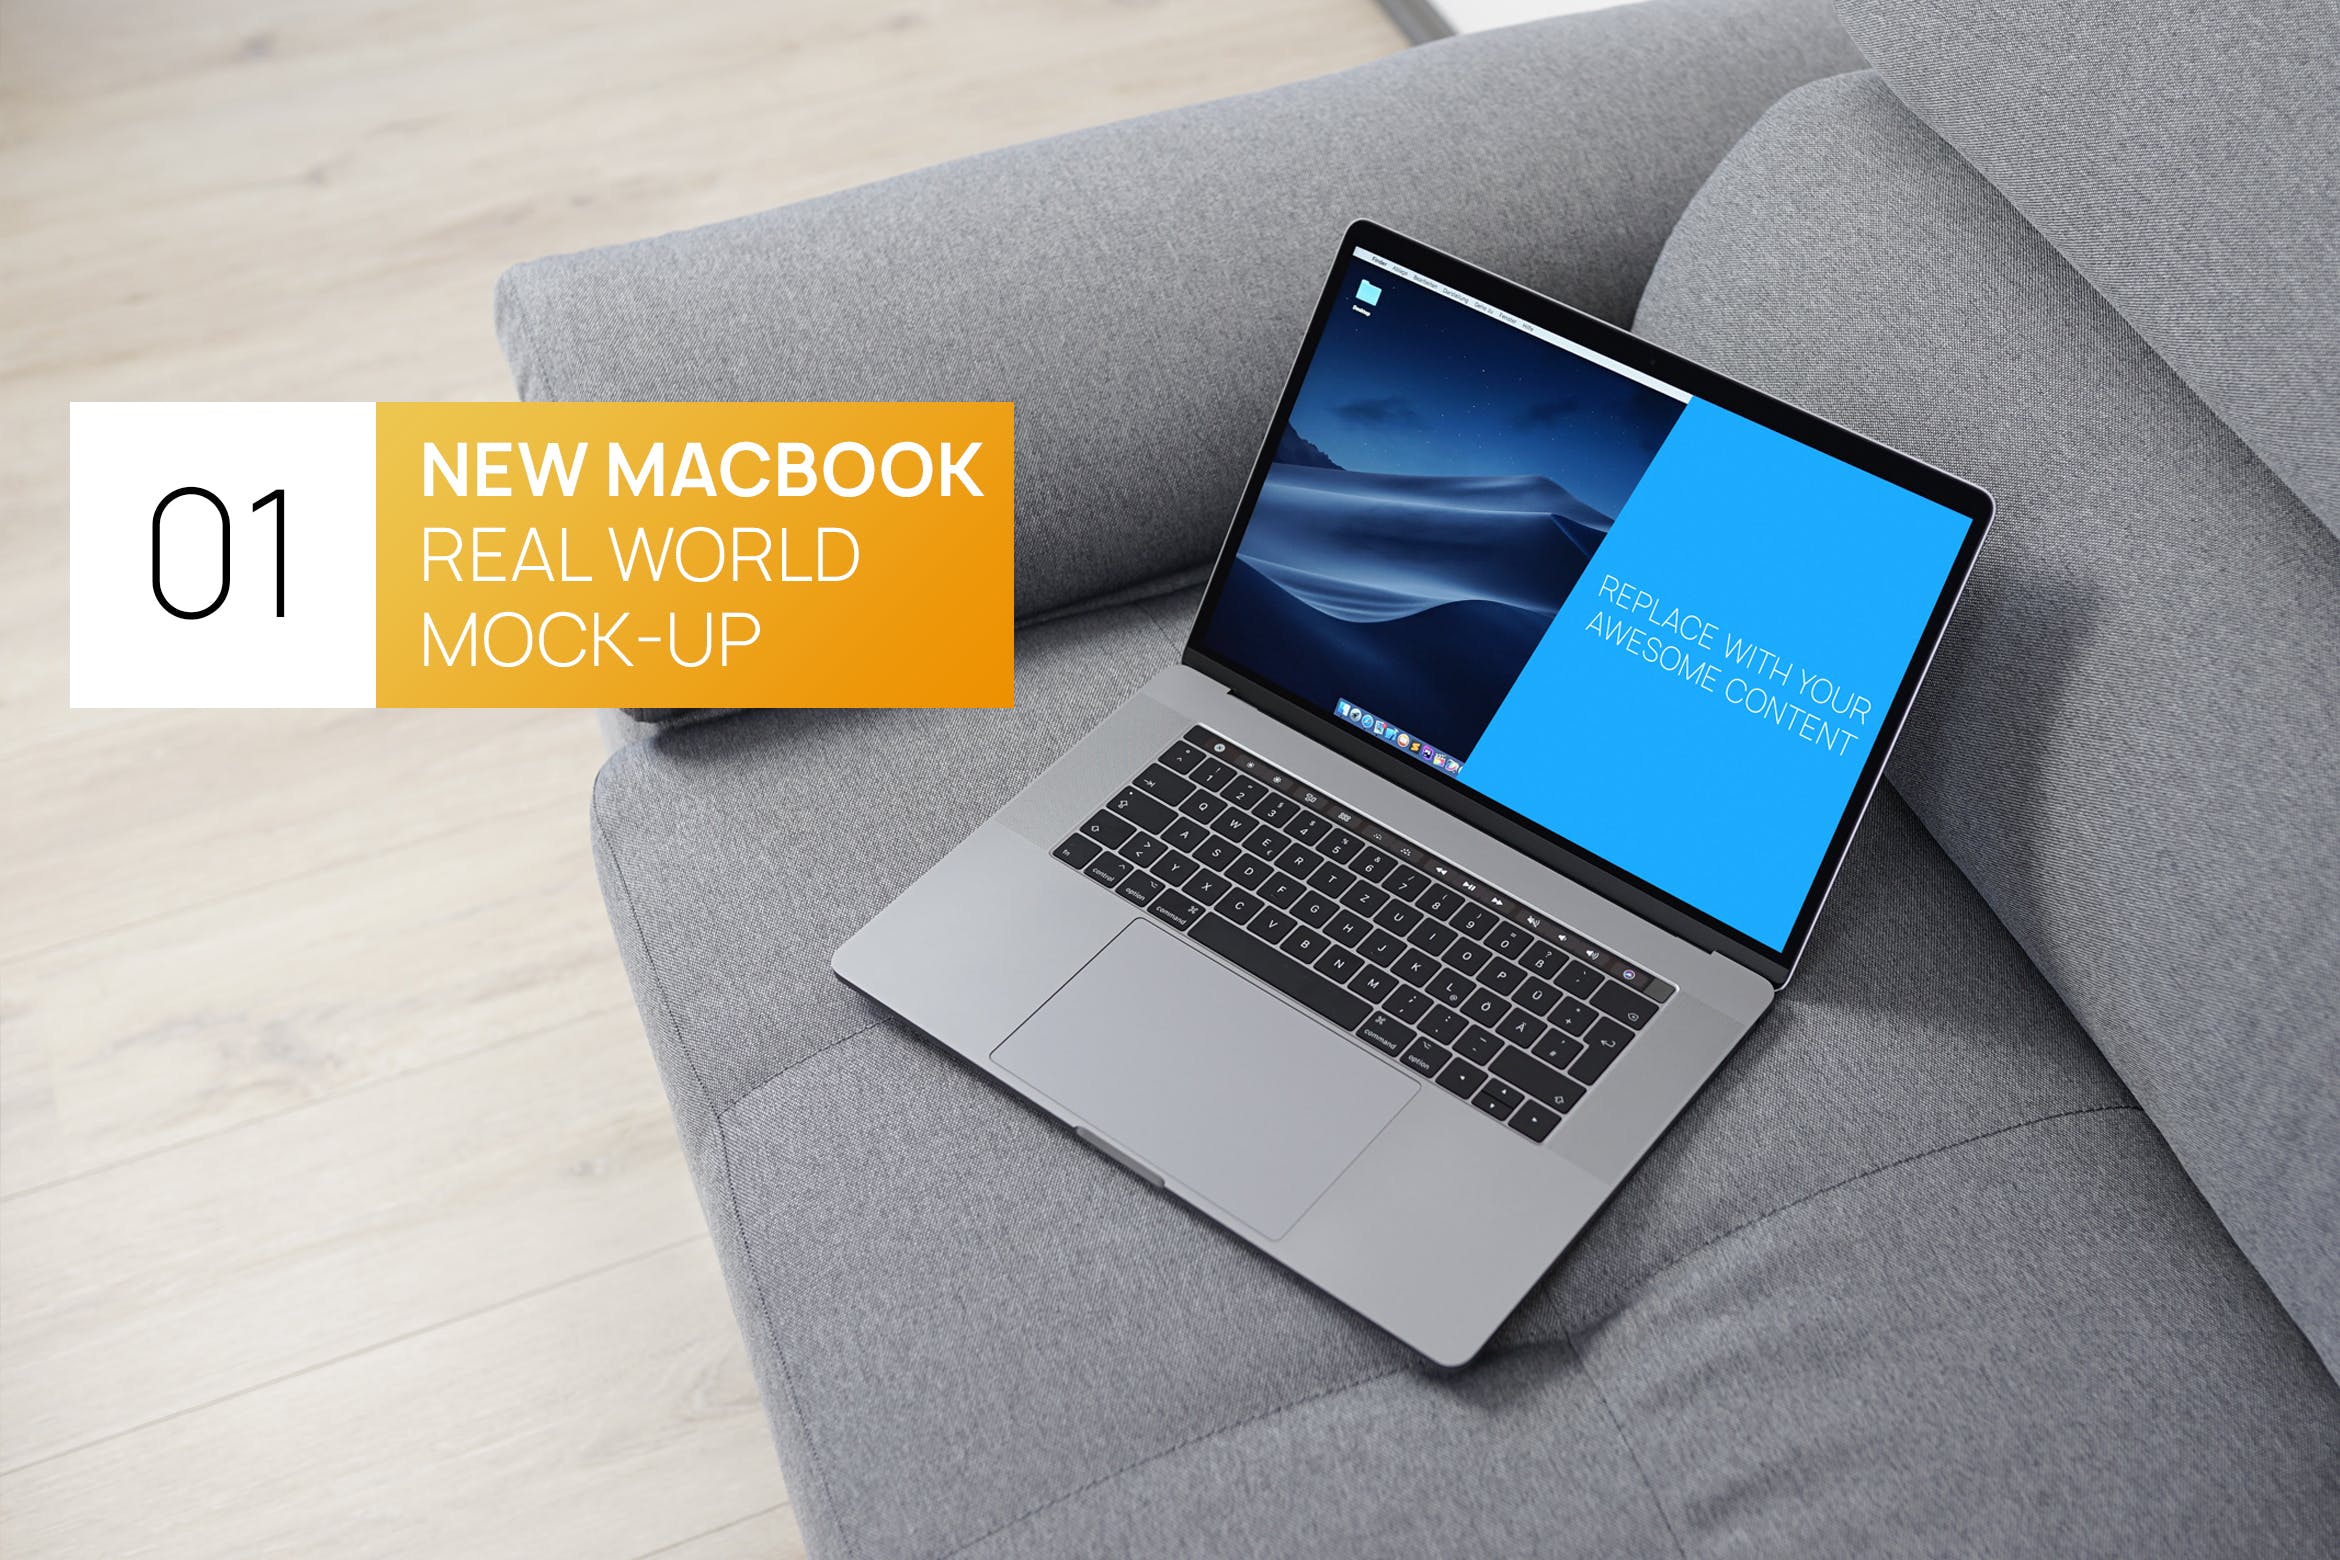 布艺沙发上的MacBook Pro电脑16图库精选样机 New MacBook Pro Touchbar Real World Mock-up插图